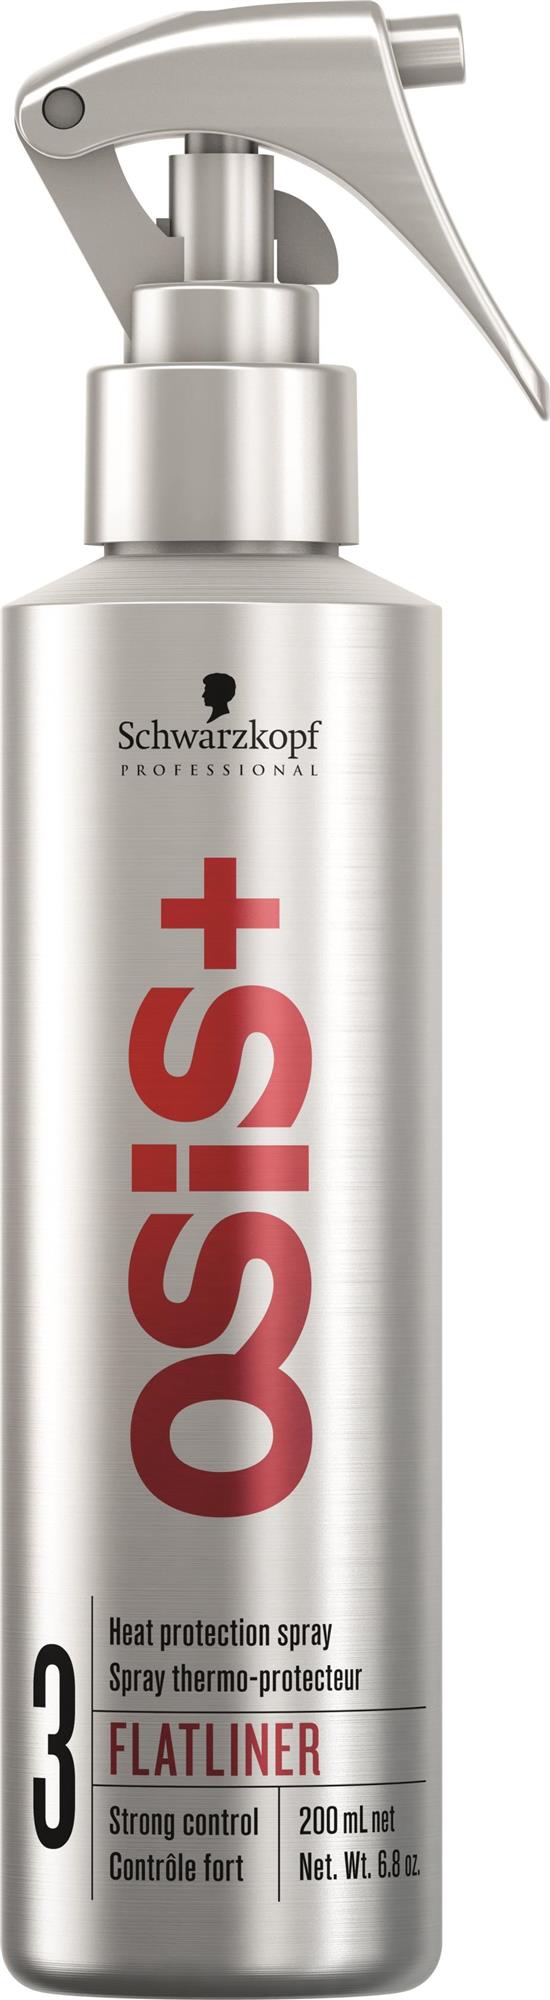 OSIS+ Flatliner, Schwarzkopf Professional